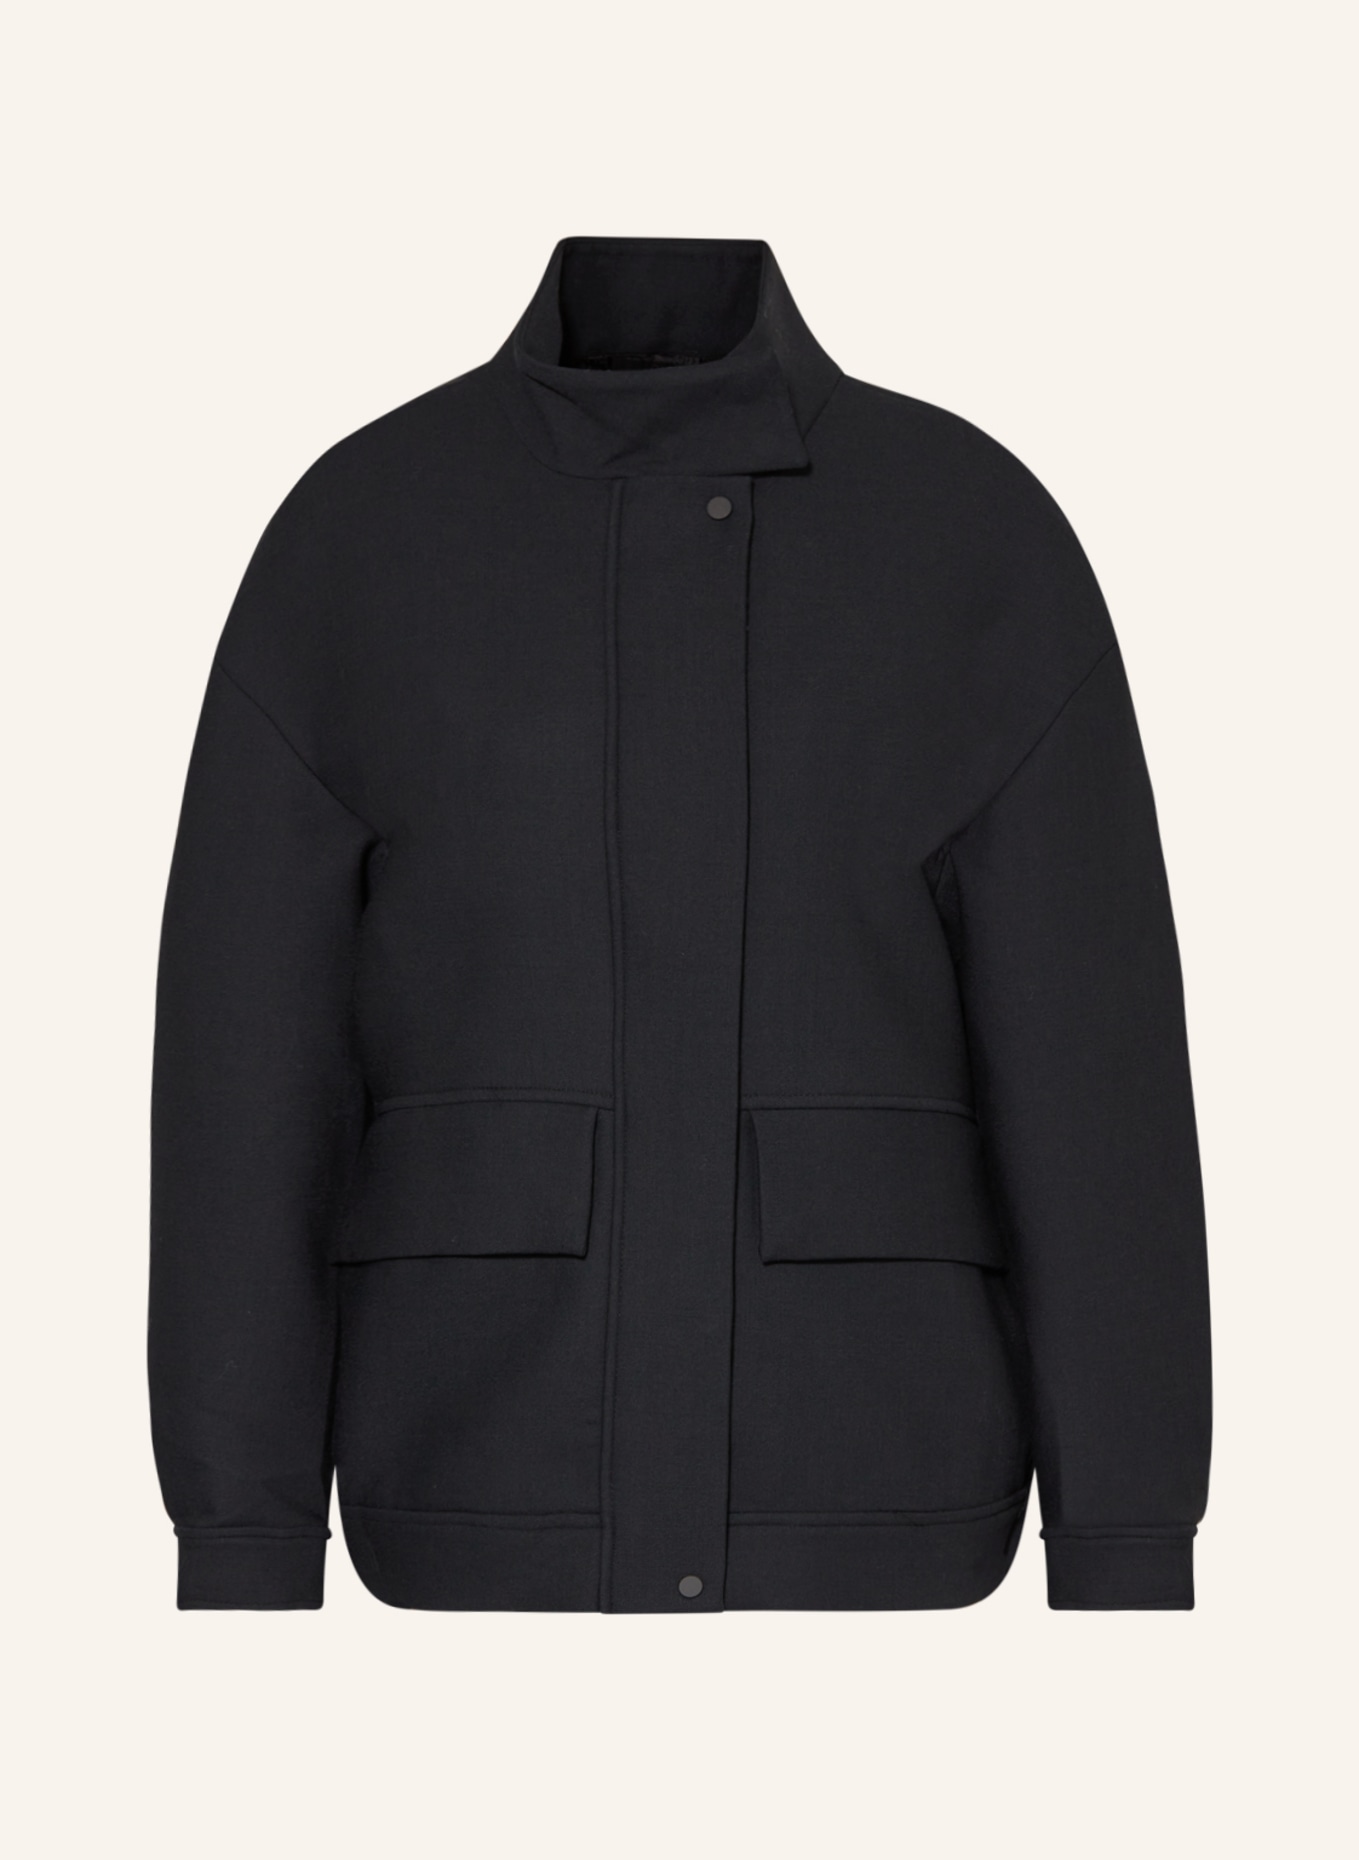 COS Bomber jacket, Color: BLACK (Image 1)